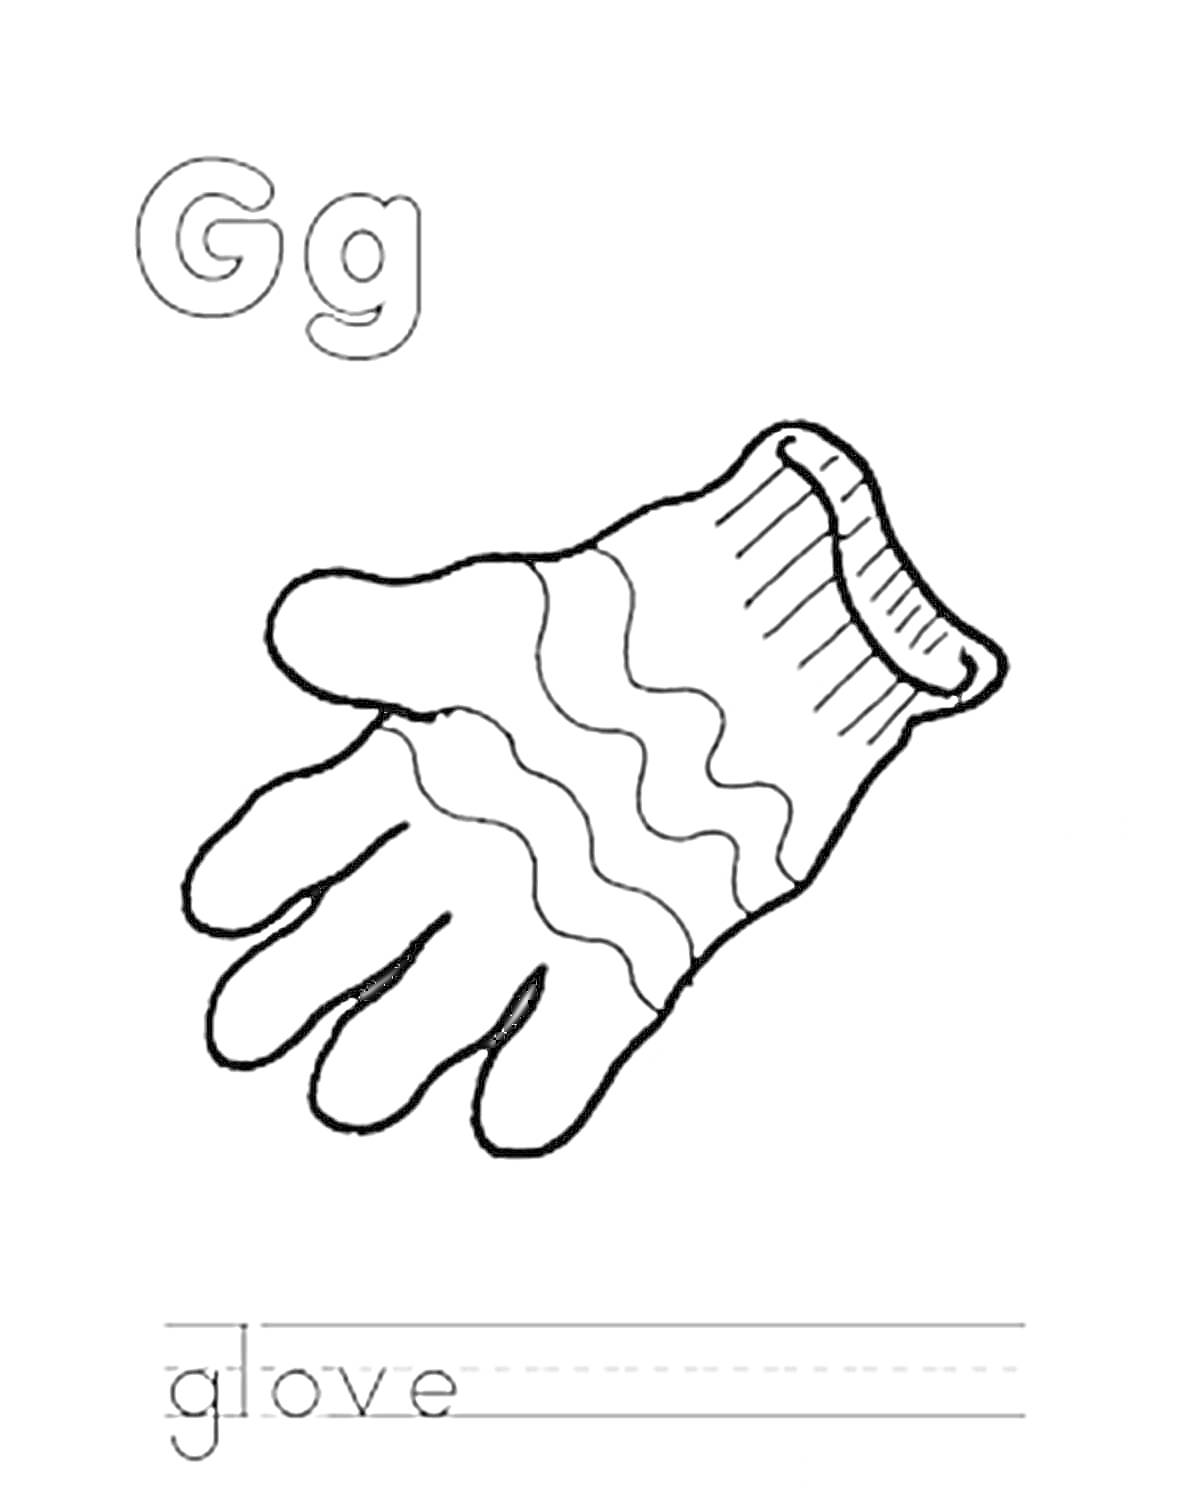 Раскраска Буква Gg, перчатка, слово glove с линейками для практики письма